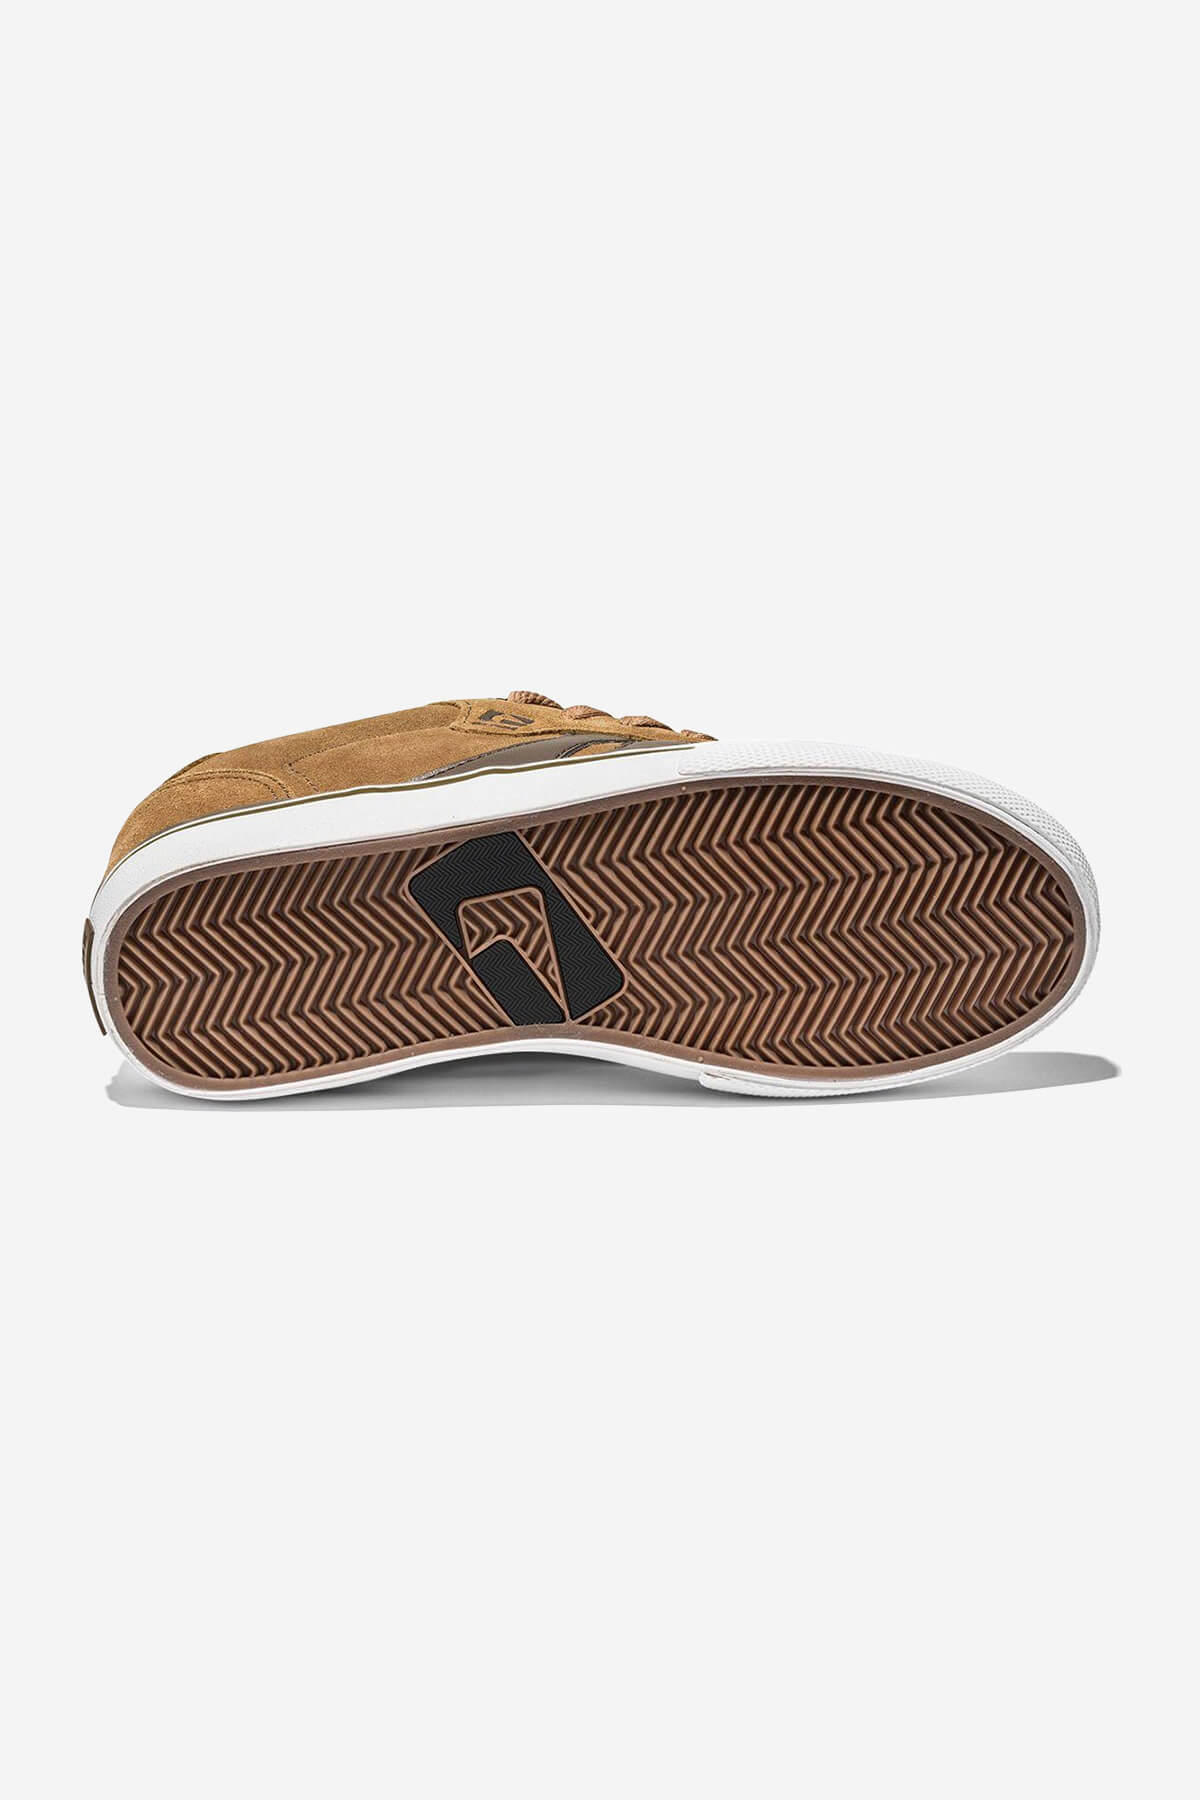 Globe - Encore 2 - Tan/Brown - skateboard Zapatos